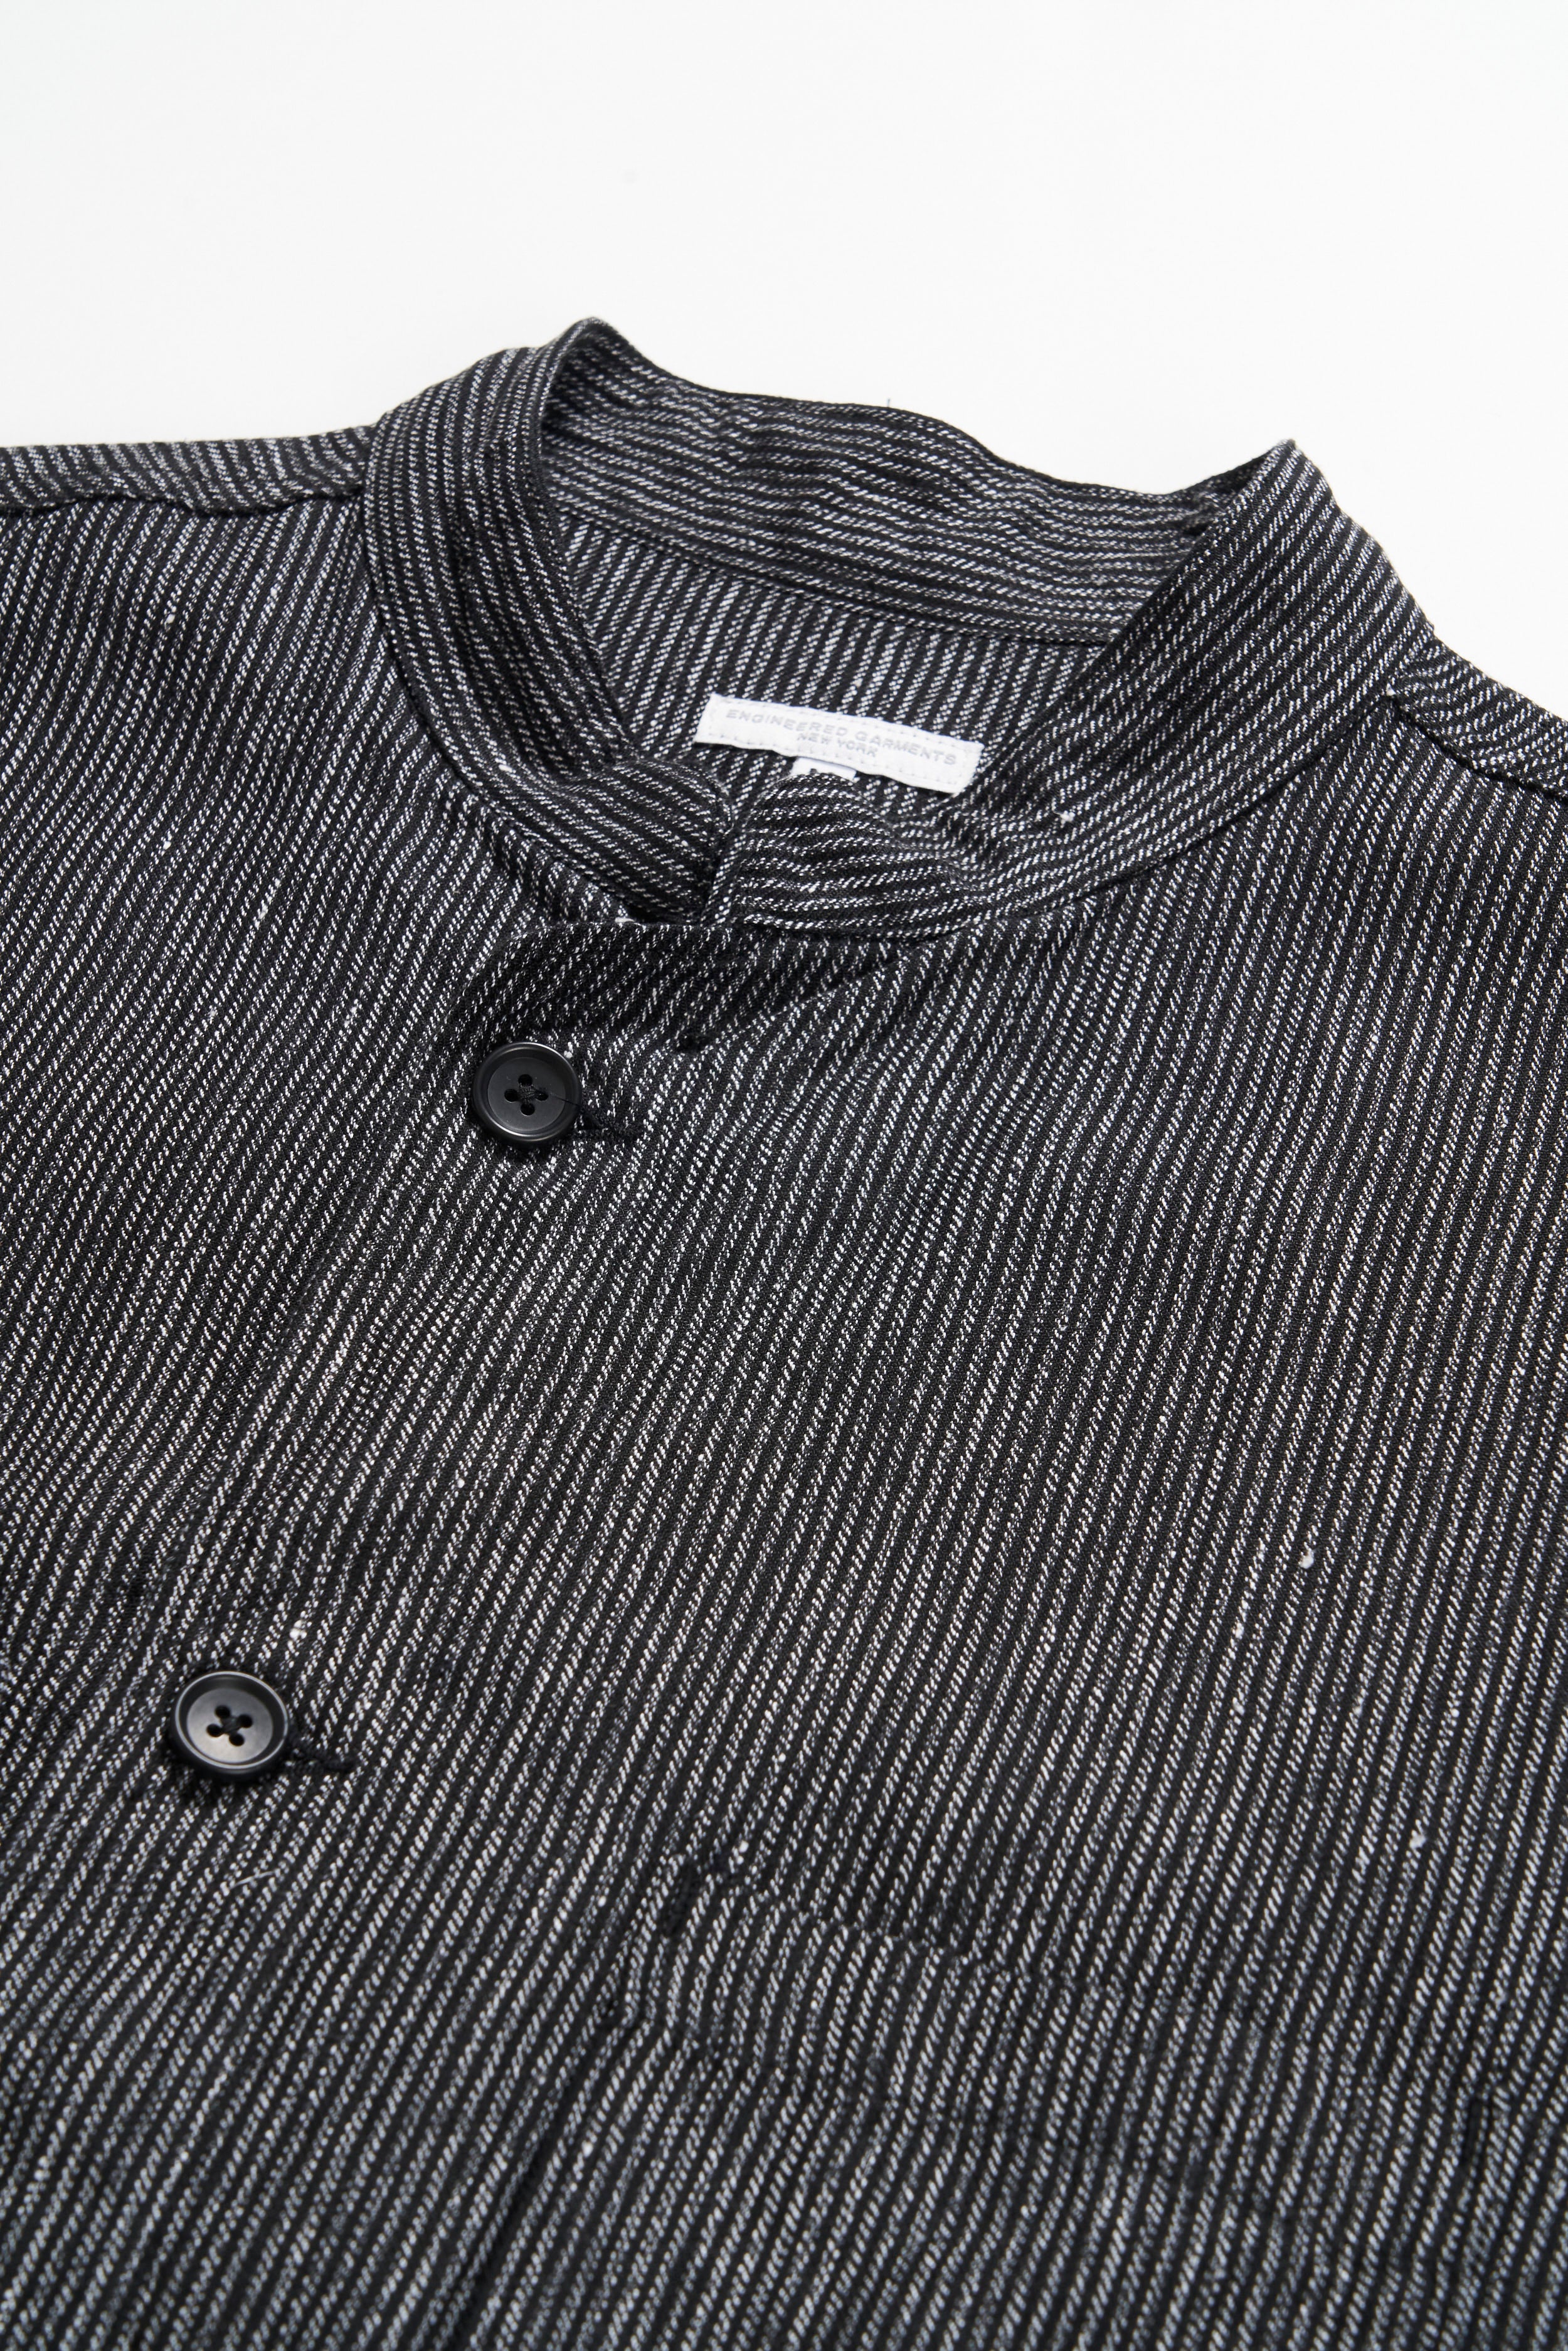 Dayton Shirt - Black / Grey Linen Stripe